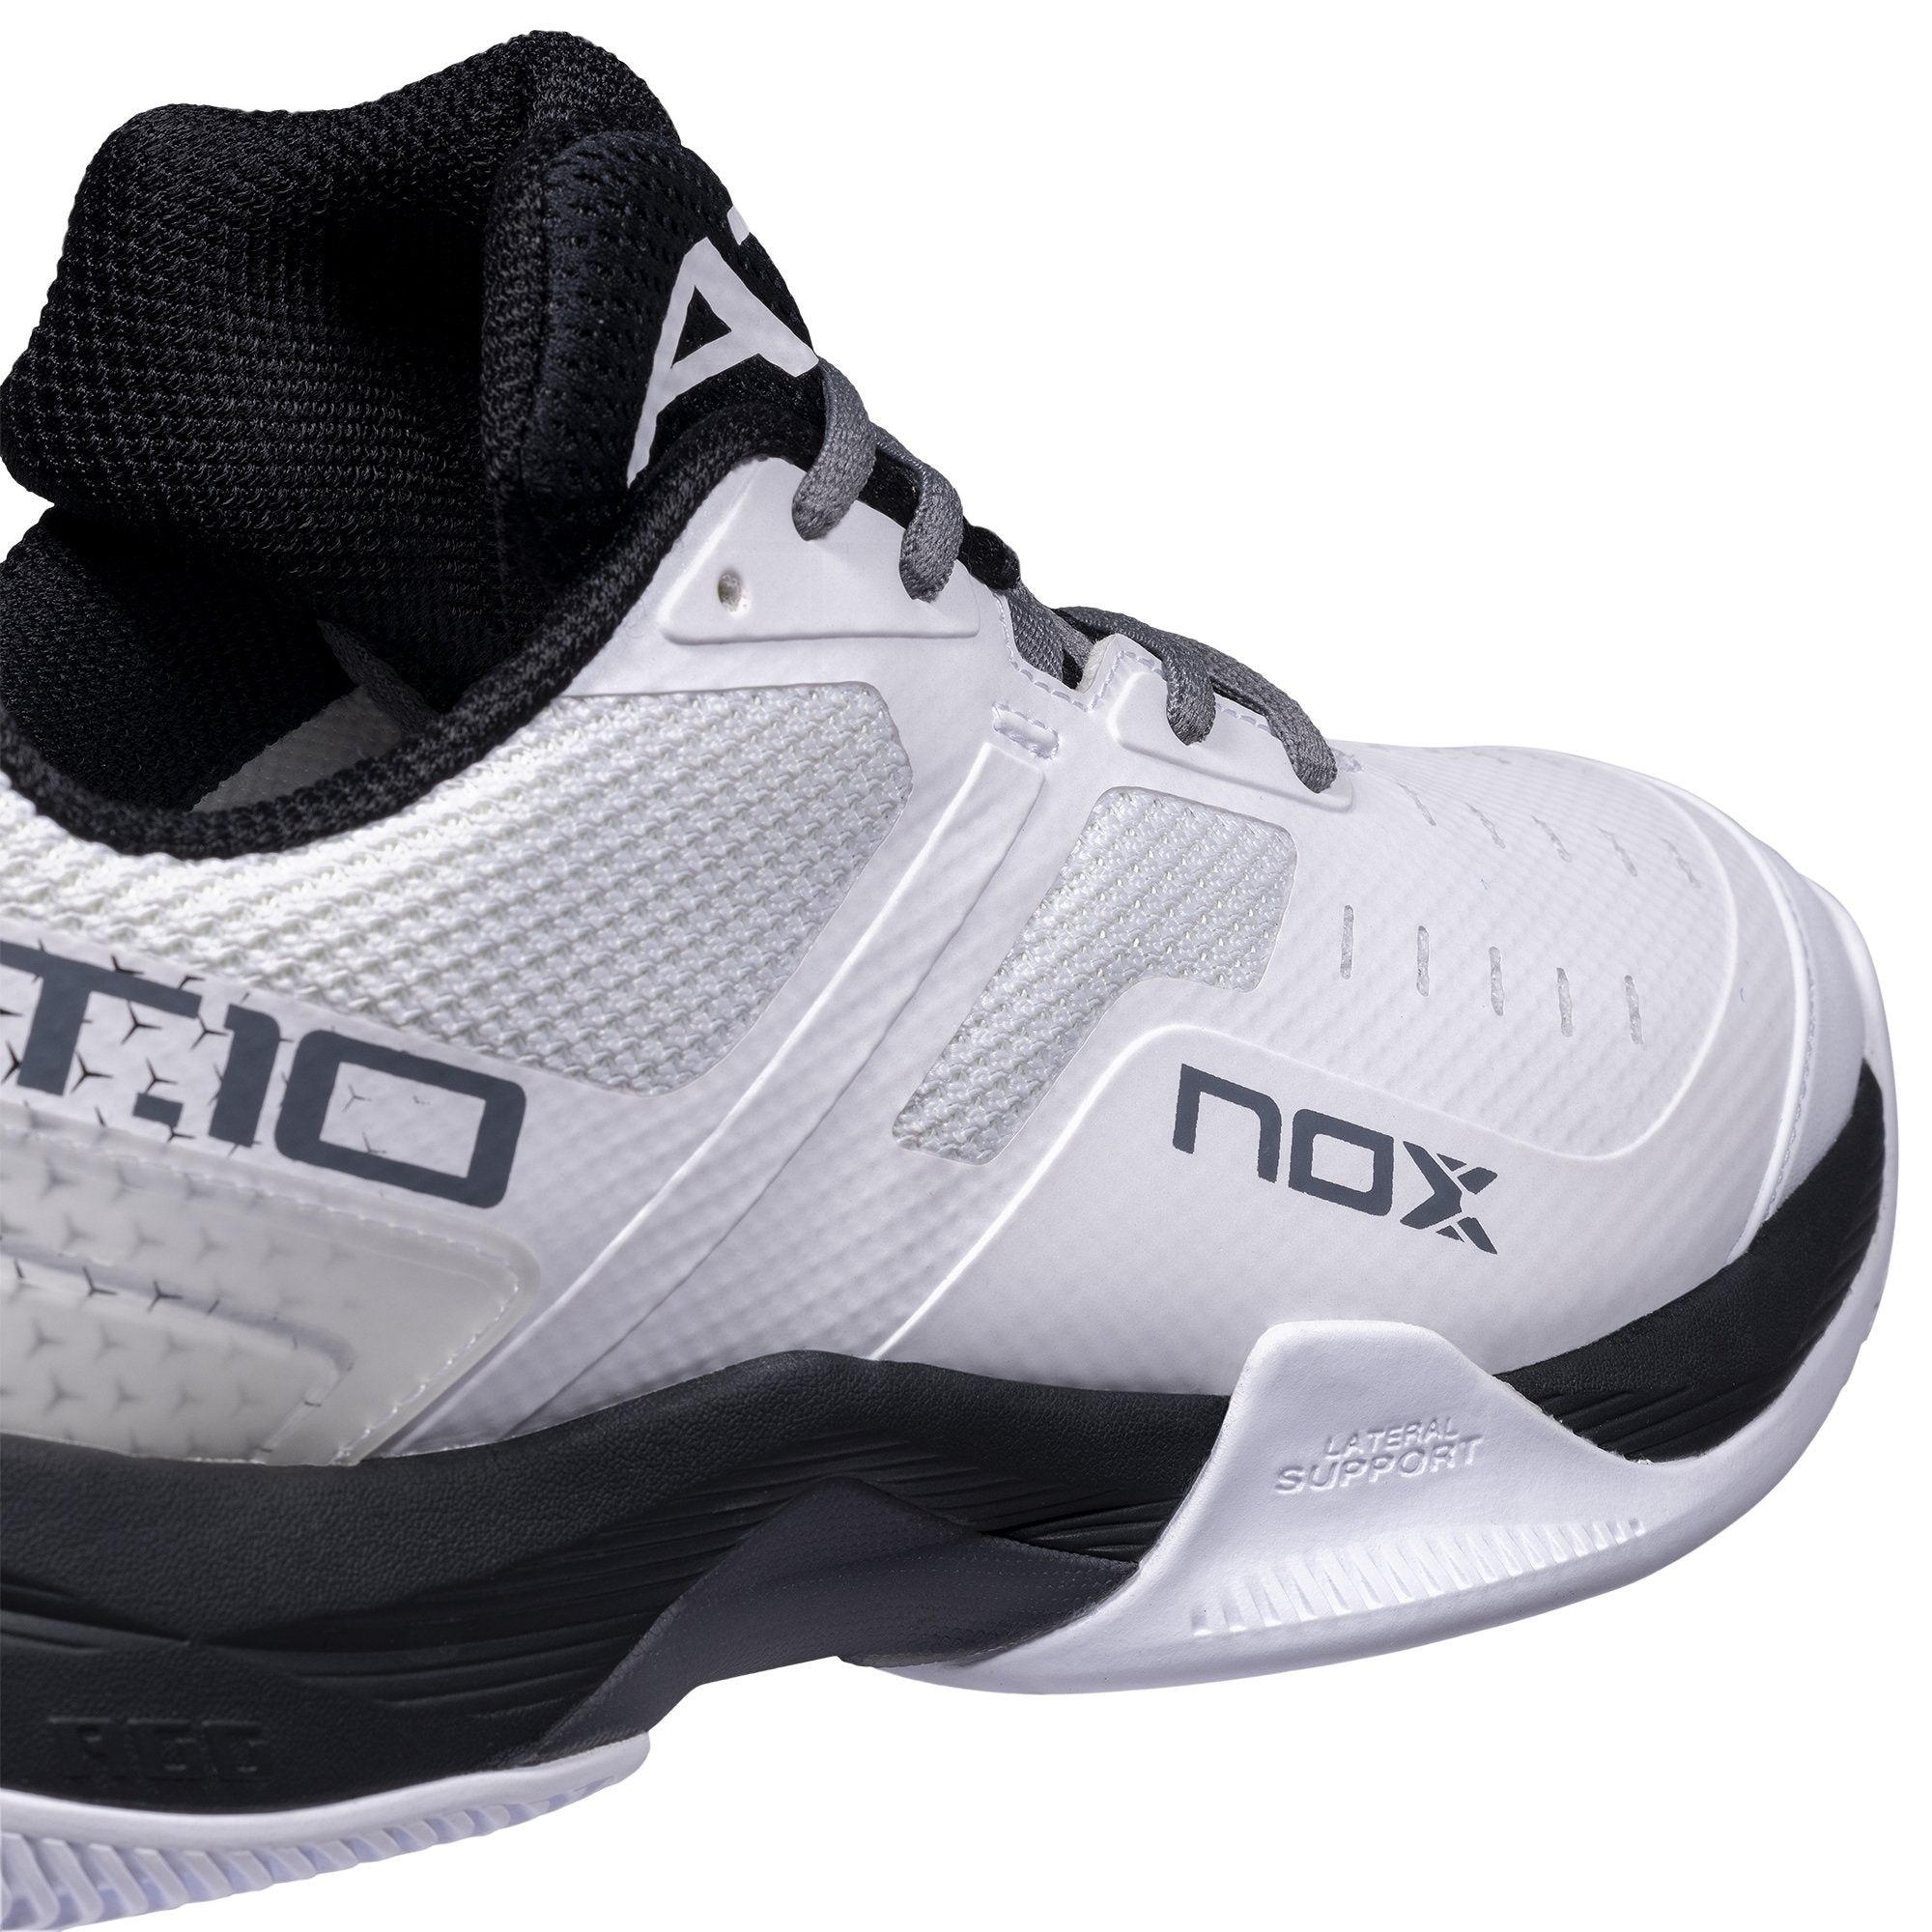 Zapatillas de Pádel Nox AT10 Blanco/Negro - NOX